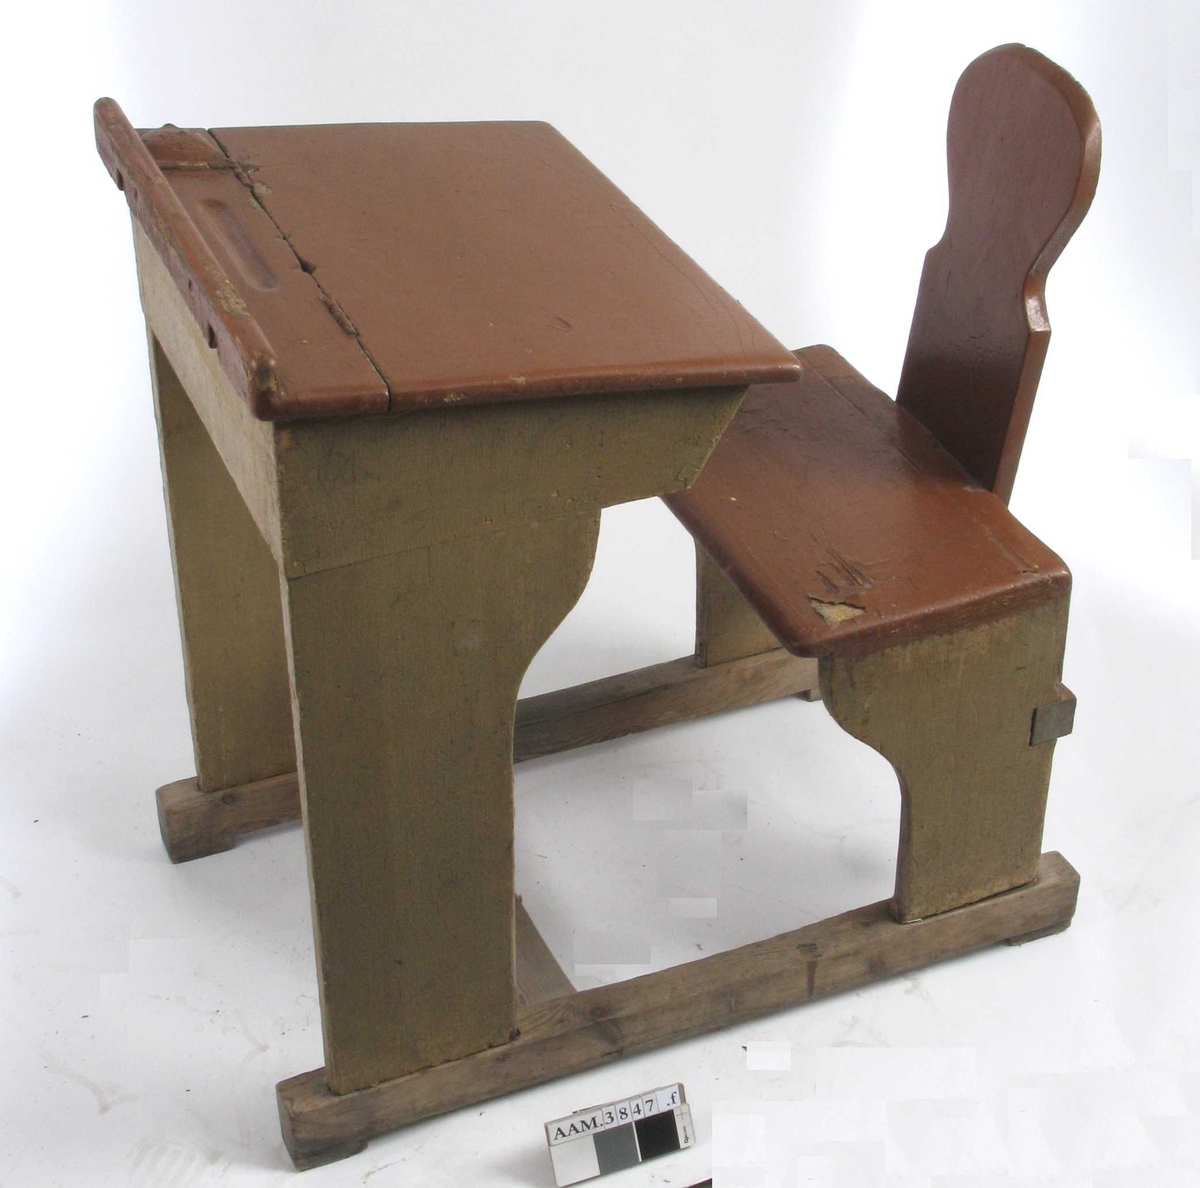 Form: Vanger m. pult og stol i ett. Rom for oppbevaring under plata.
